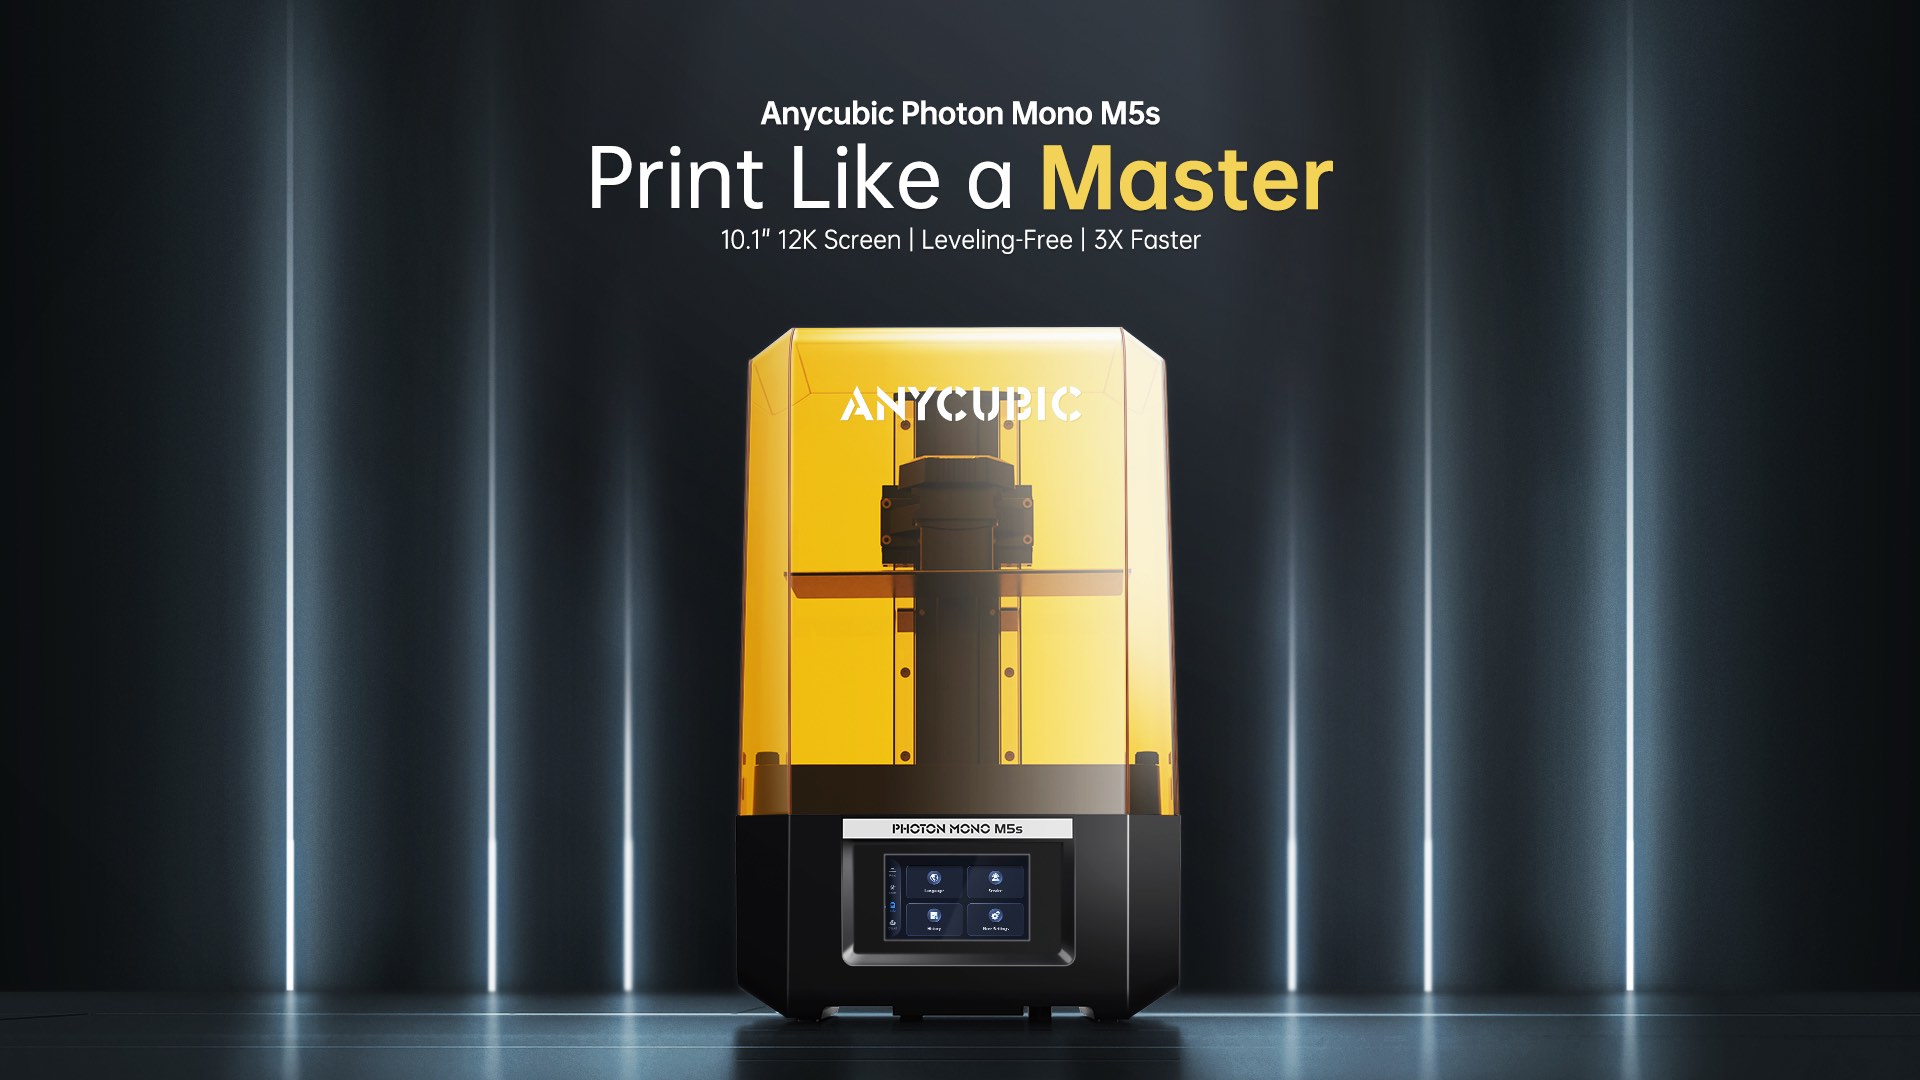 Anycubic Photon Mono M5s è la stampante 3D per veri Pro, con schermo 12K  per la massima precisione! 